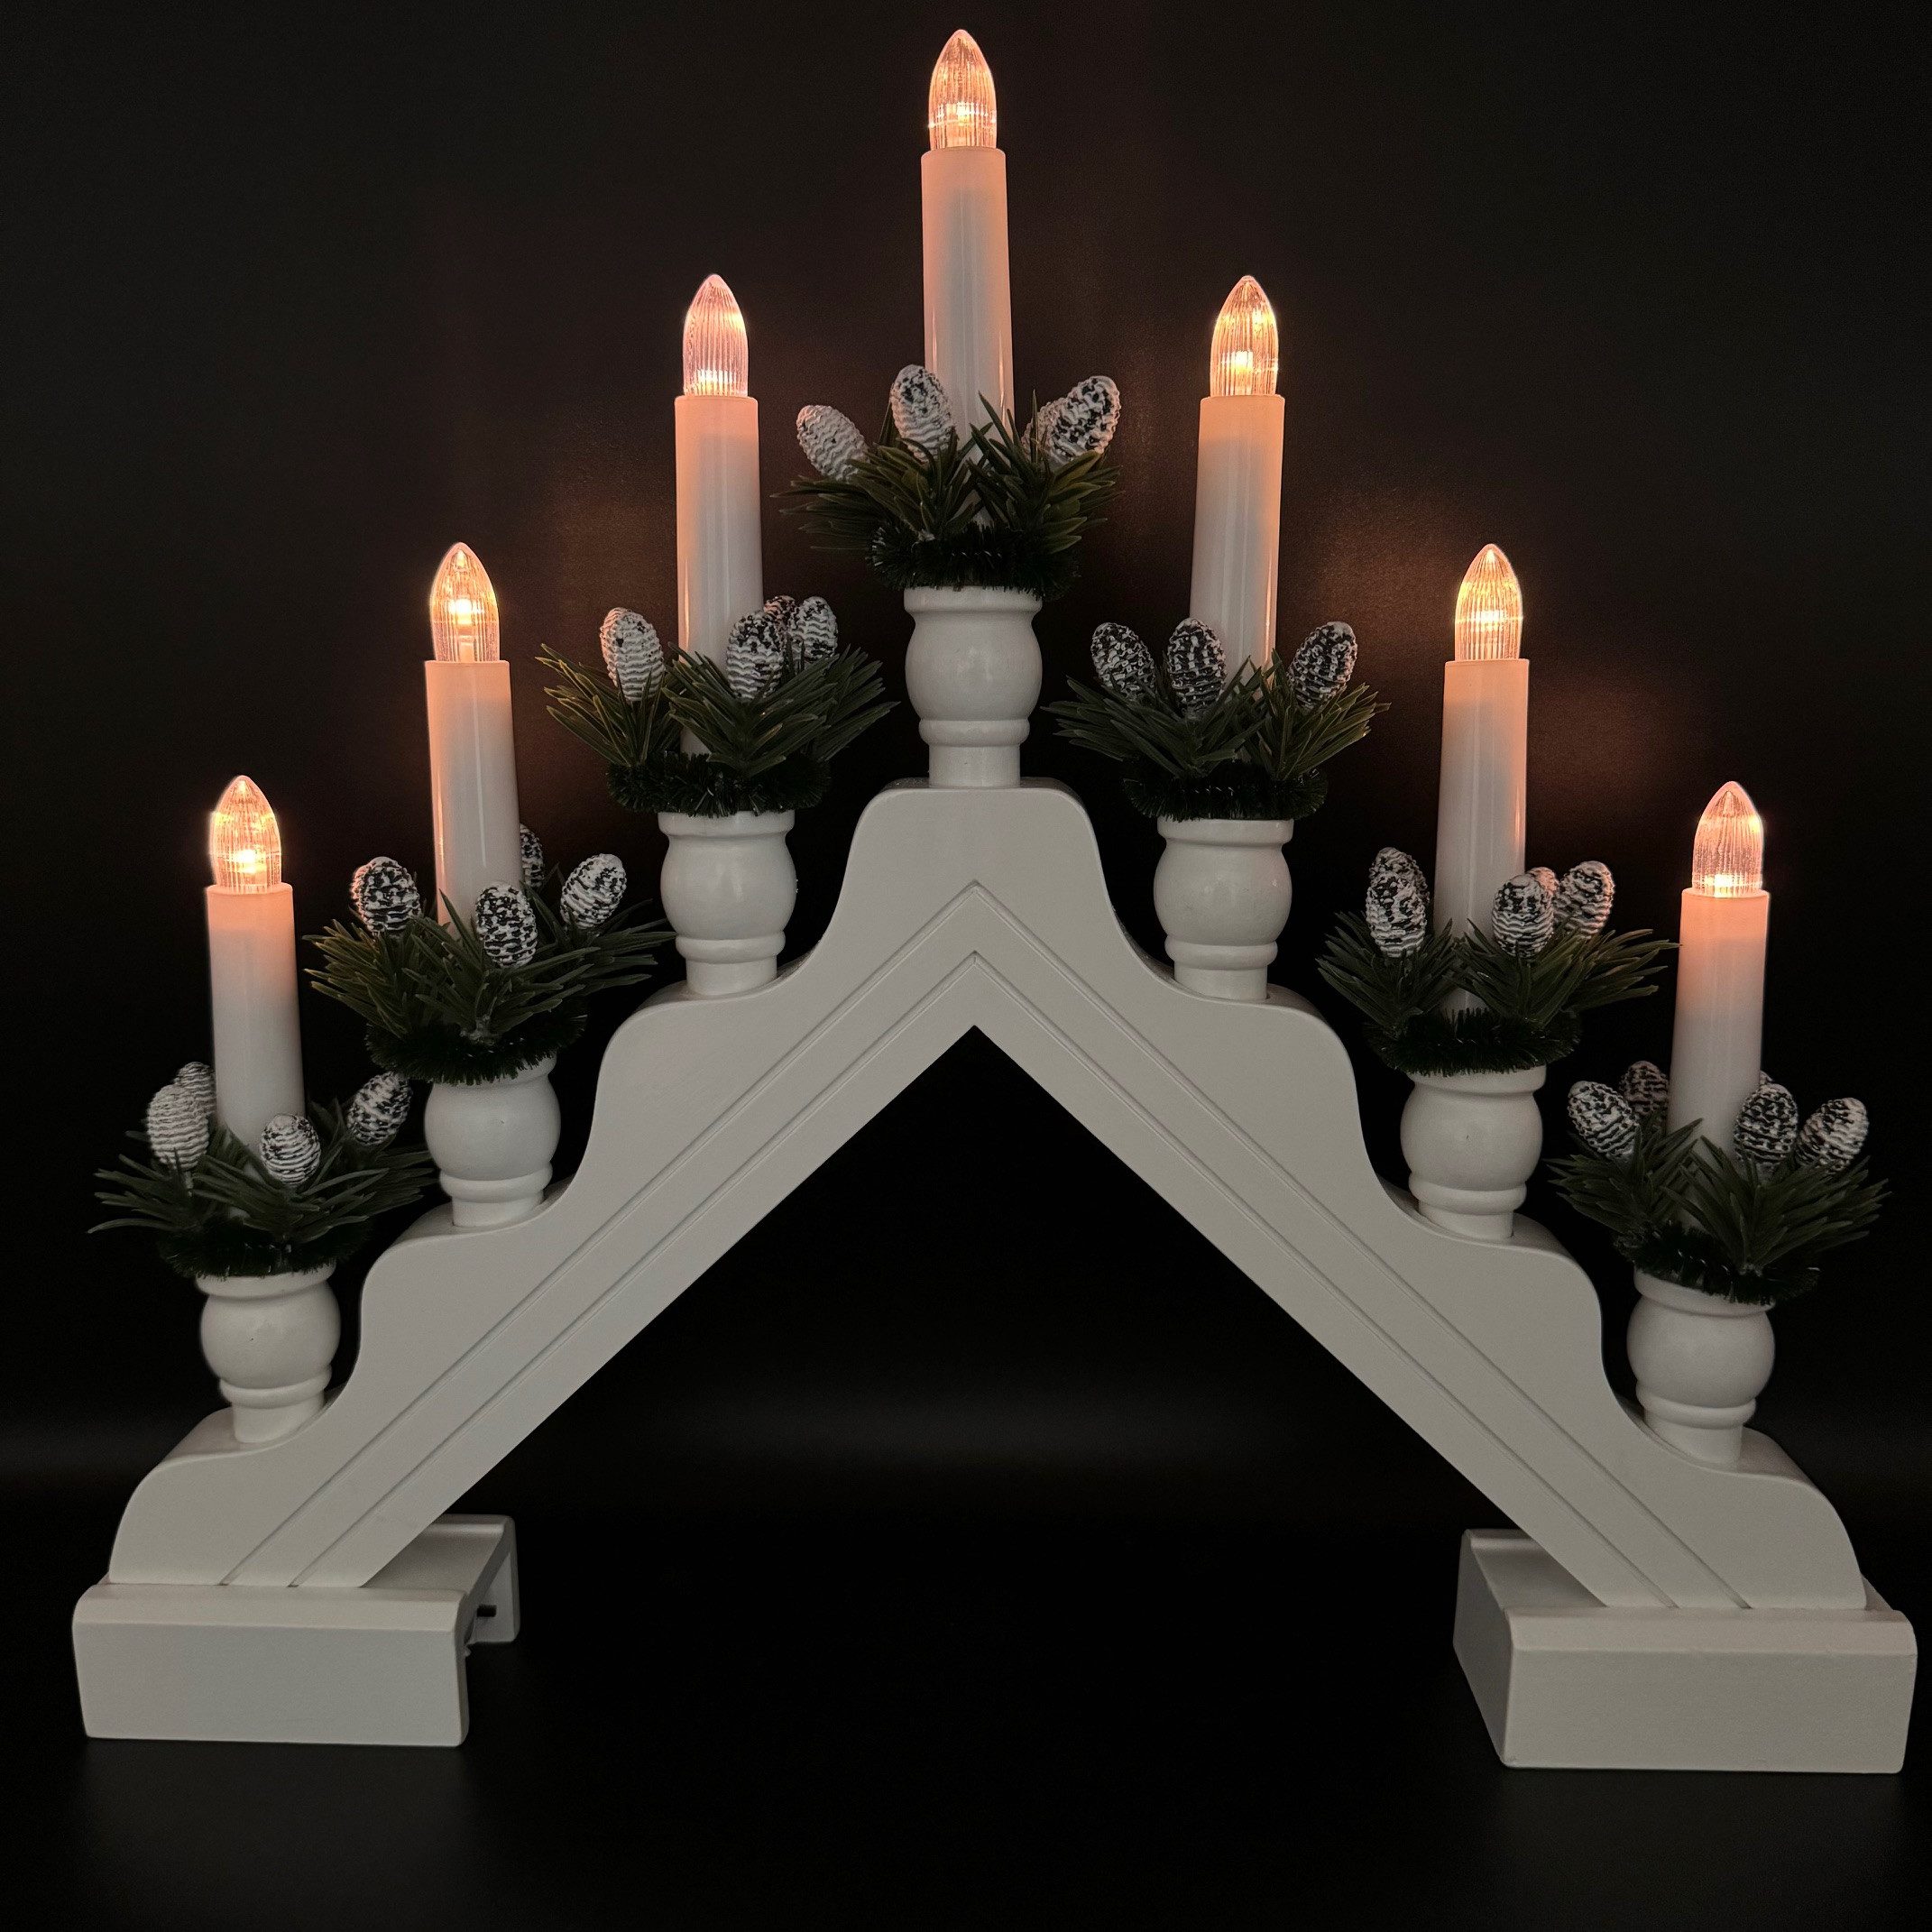 Online-Fuchs LED Fensterleuchter Lichterbogen aus Holz mit 7 LED-Kerzen und Timer, LED-Weihnachtskerzen, Warmweiß, Weihnachten, Deko - 6 Stunden Timerfunktion